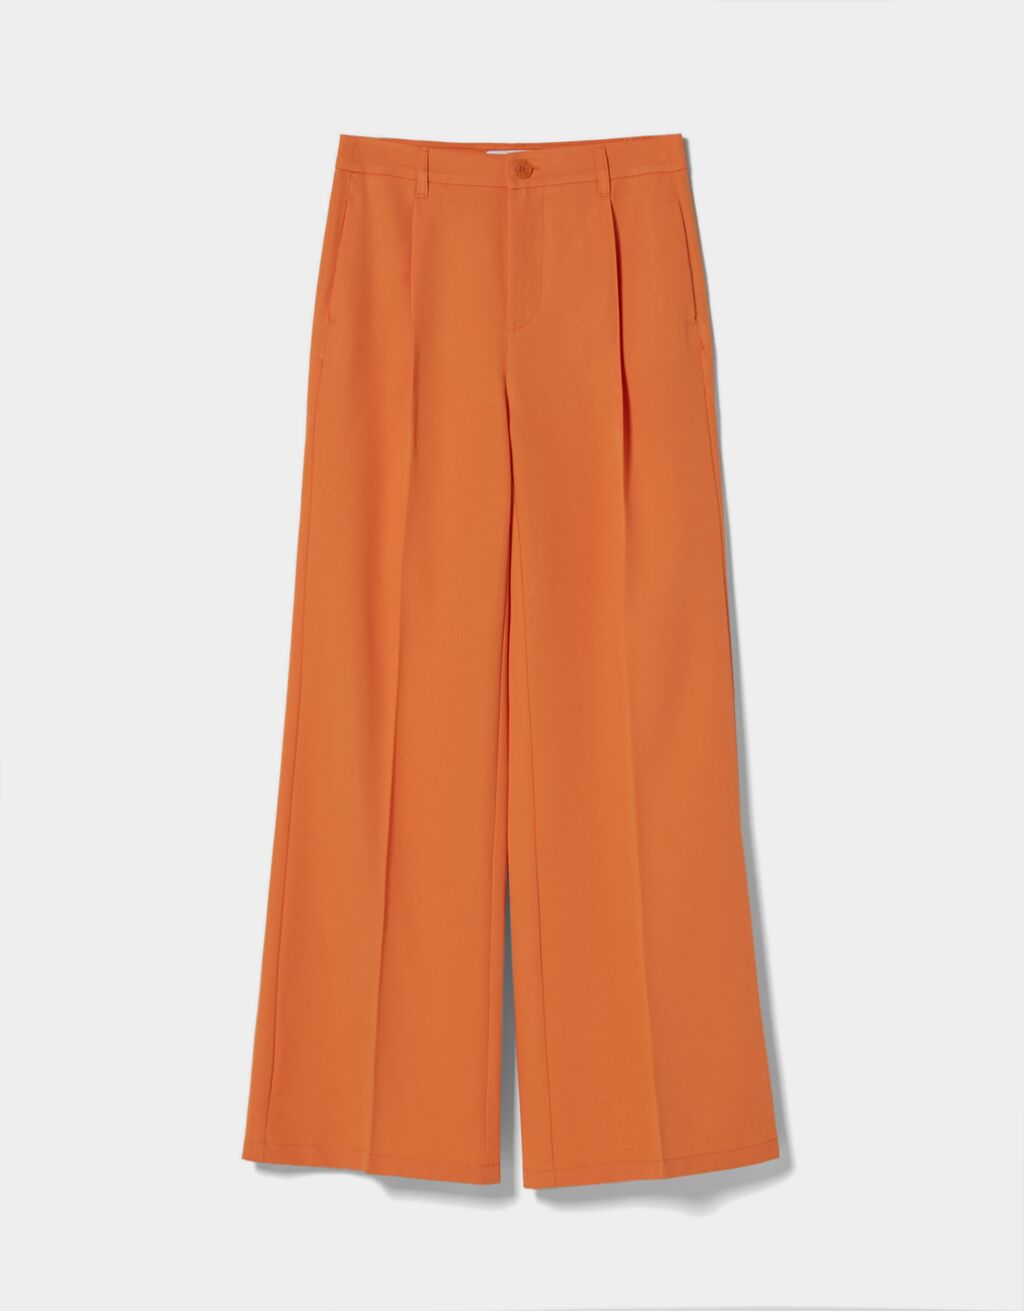 El pantalón naranja de Bershka para combinar con un crop top